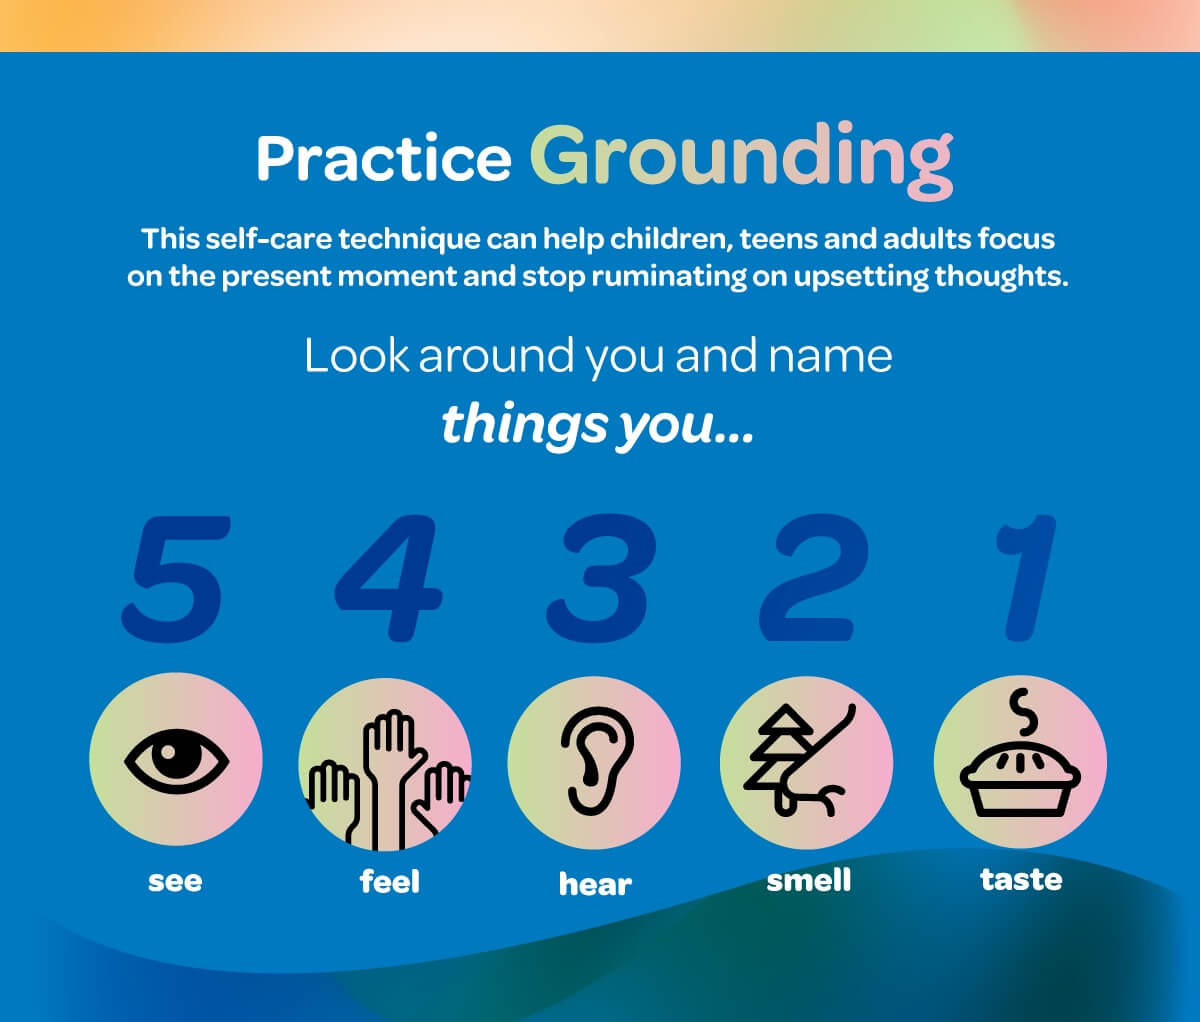 The 5,4,3,2,1 method of grounding for children.